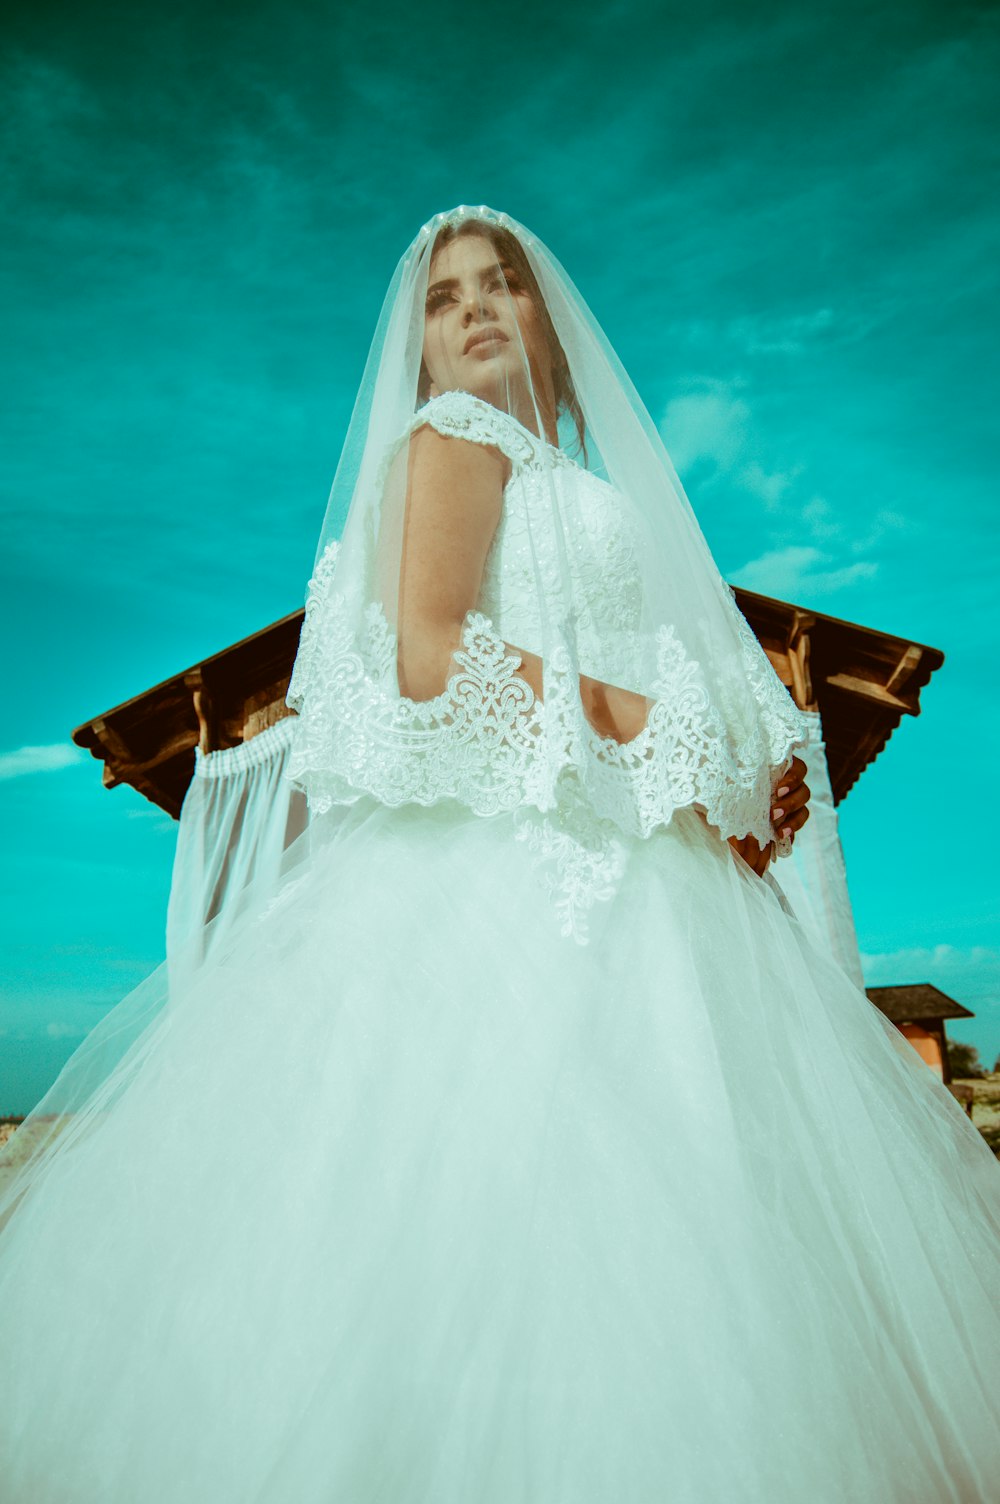 Photographie en contre-plongée d’une femme en robe de mariée blanche près d’un hangar brun pendant la journée